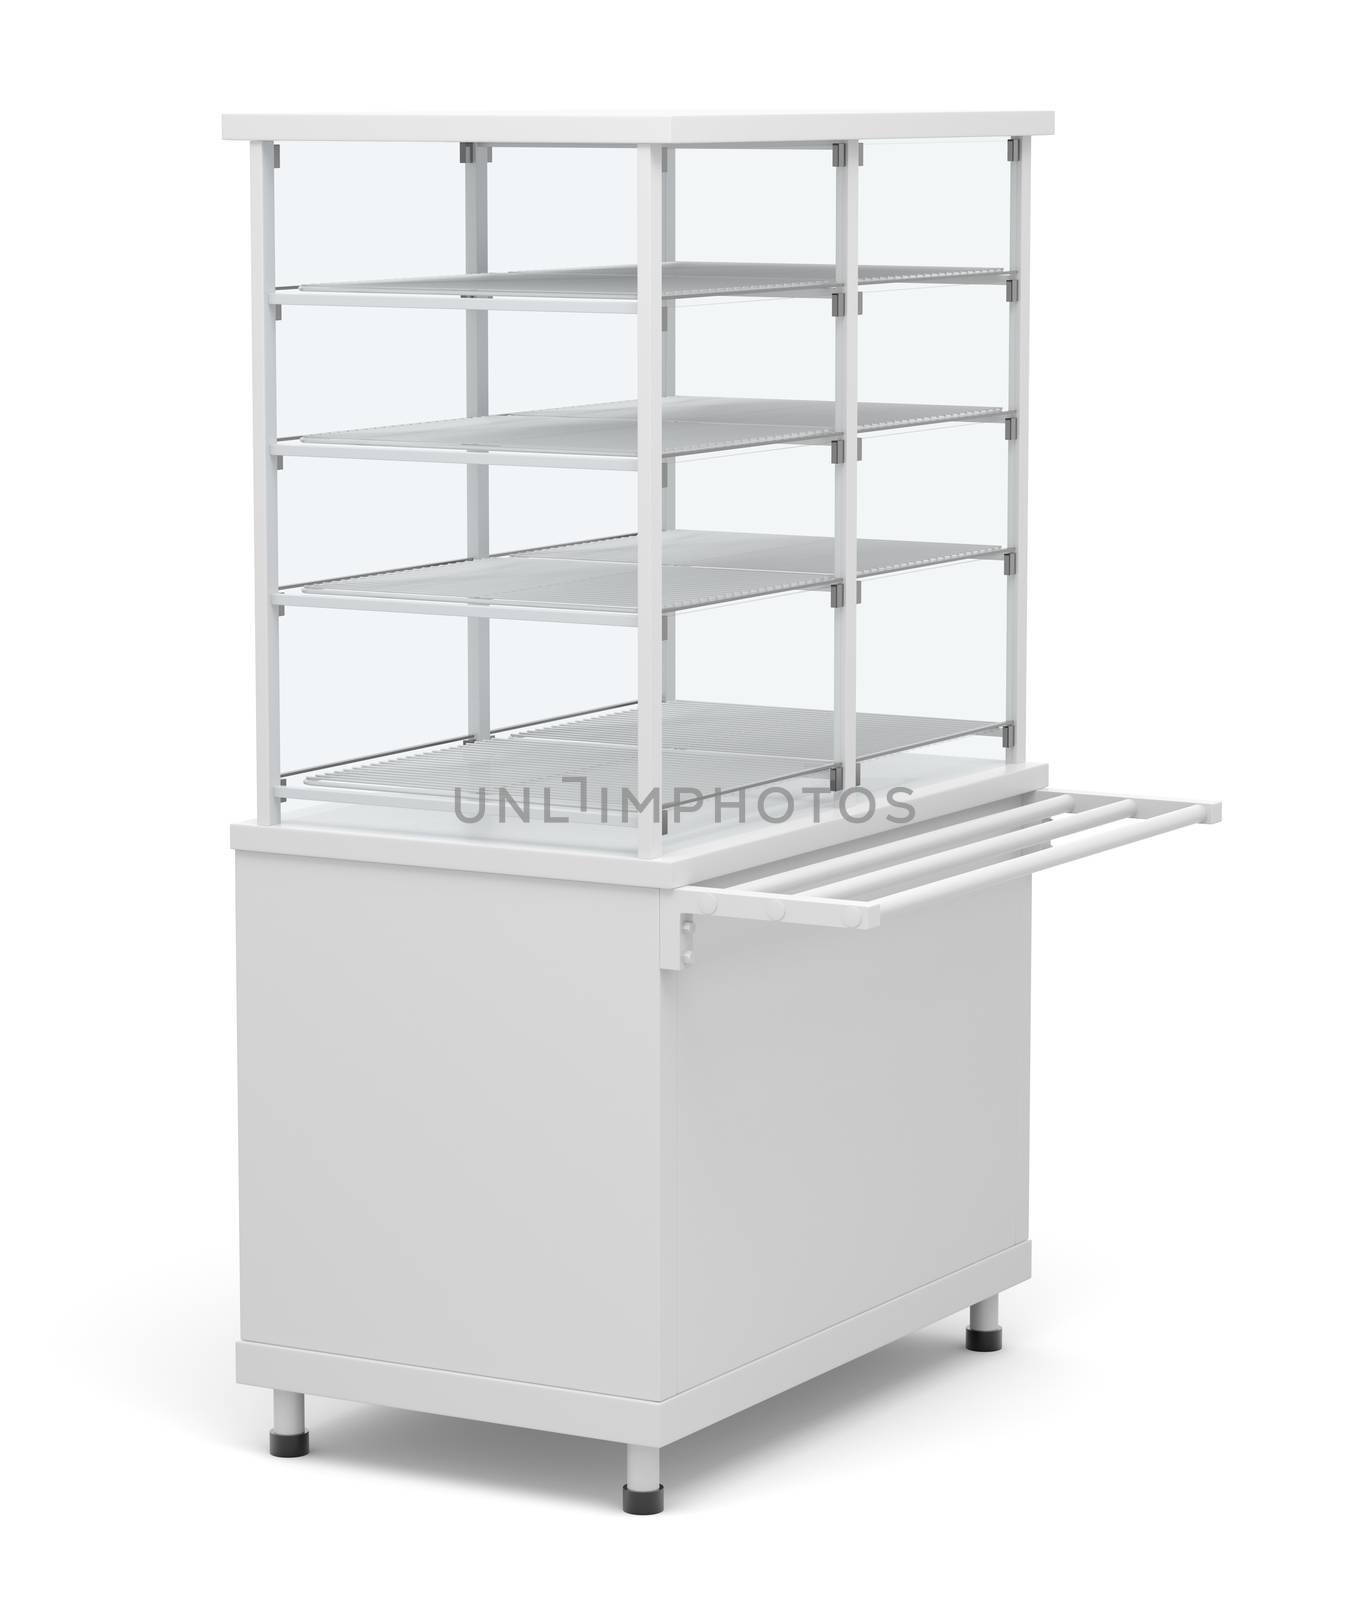 Showcase refrigeration. Isolated on white background. 3D illustration